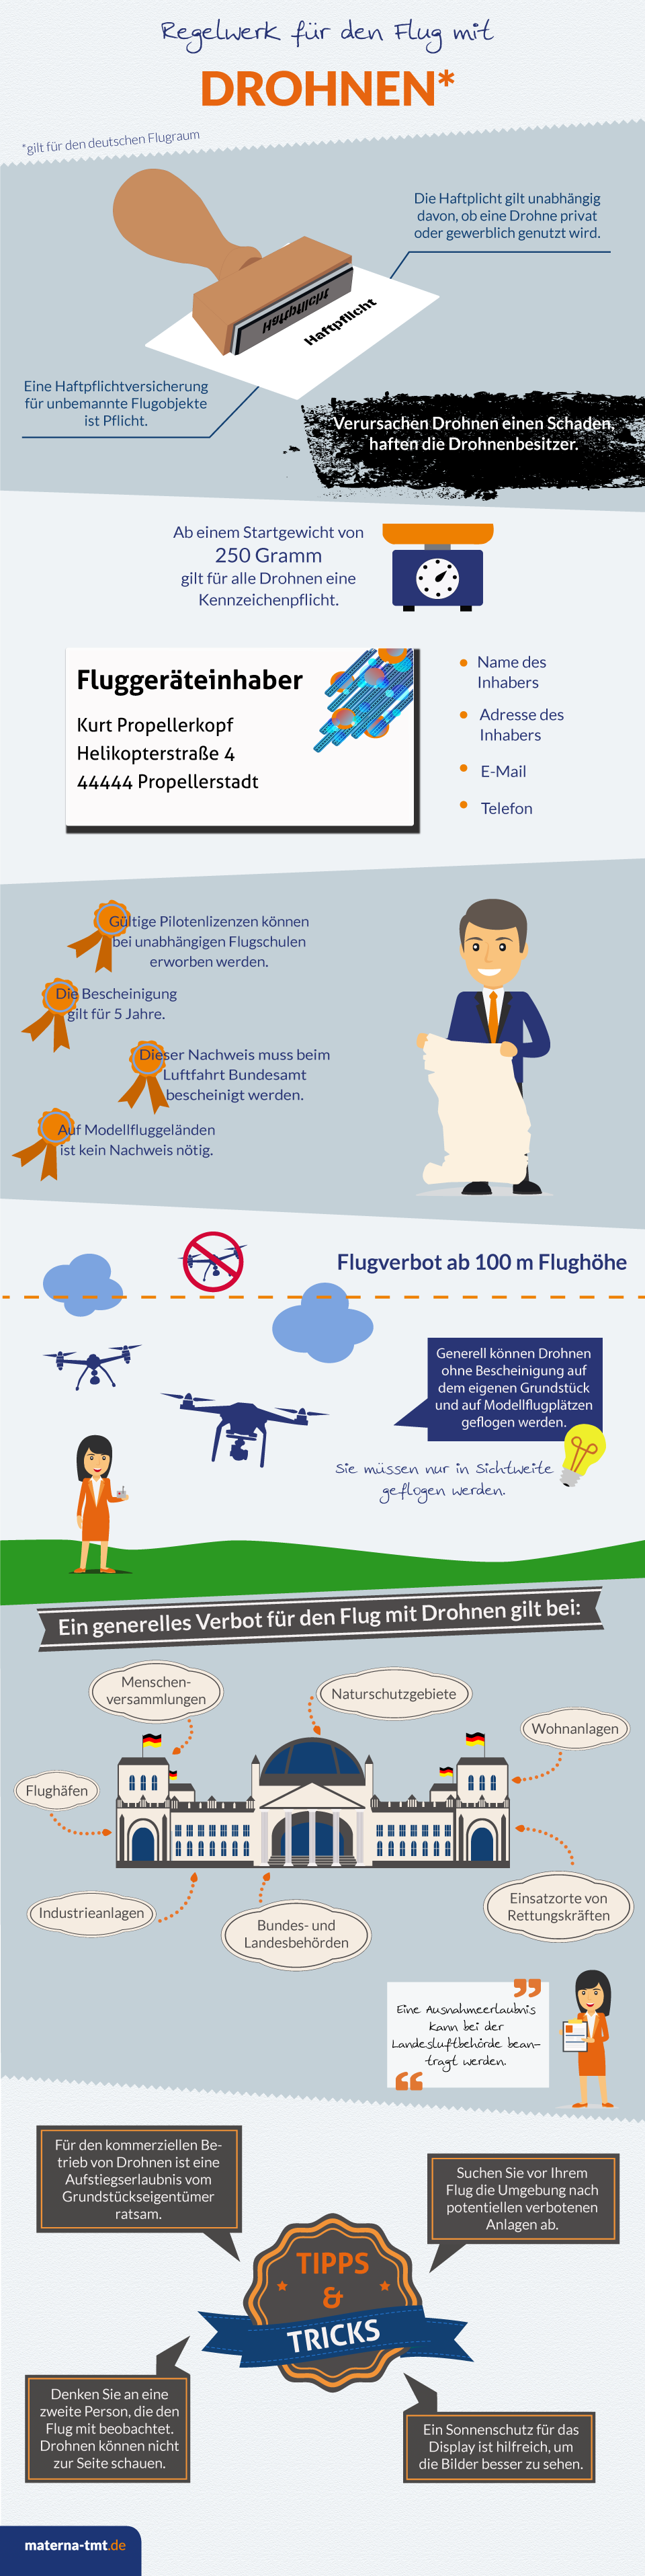 Grafik über die gesetzlichen Regelungen zum Drohnenflug